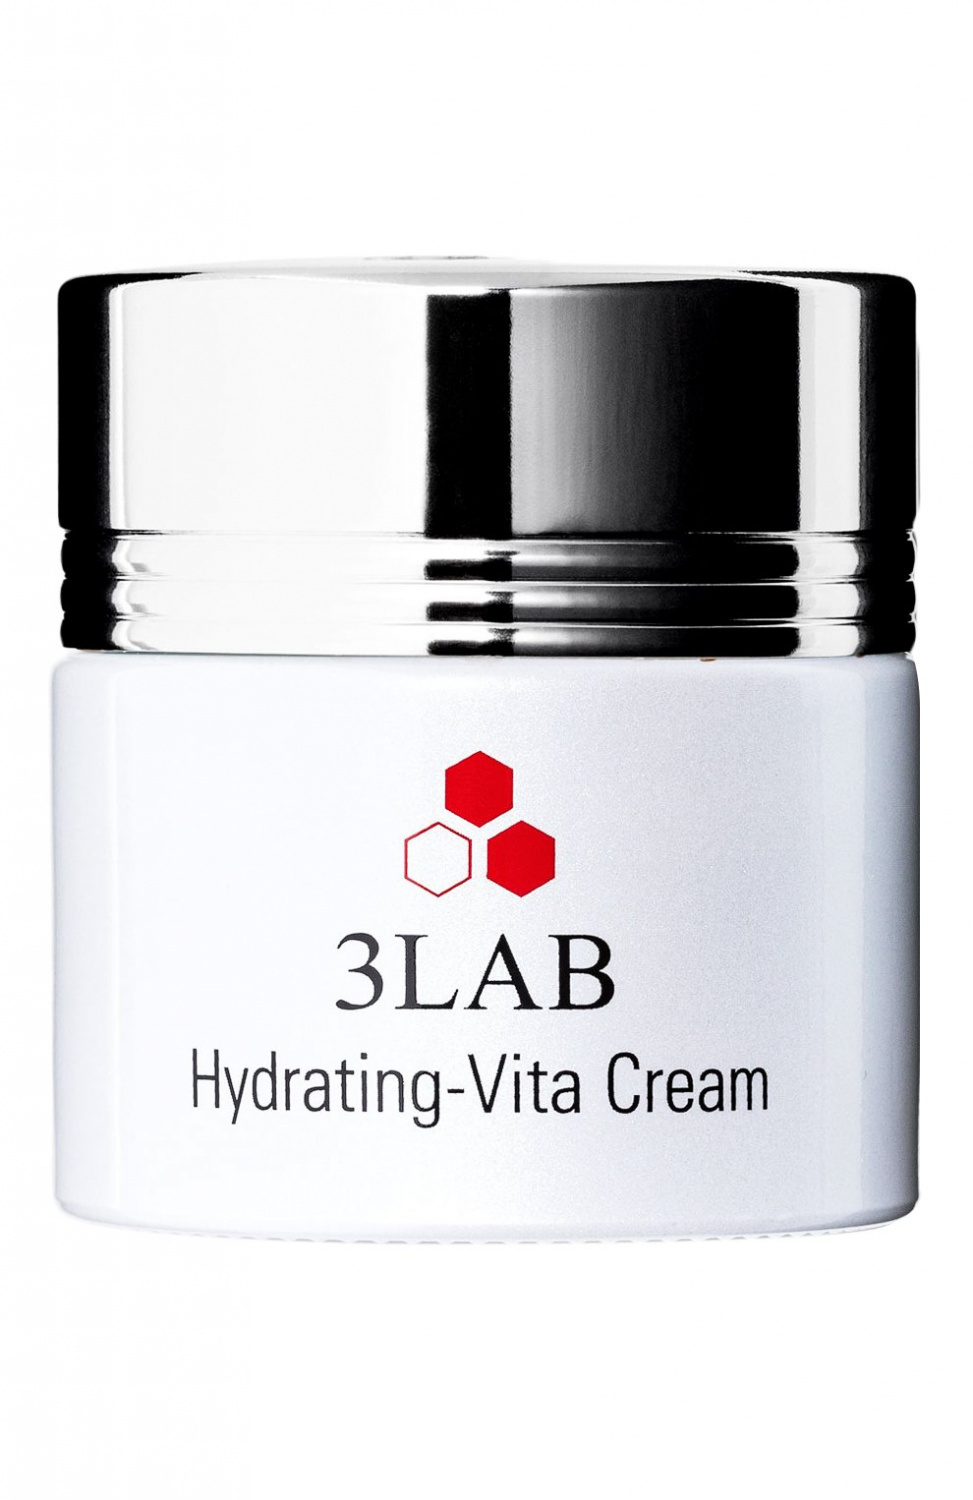 3LAB Hydrating-Vita Cream 60ml - интернет-магазин профессиональной косметики Spadream, изображение 37301